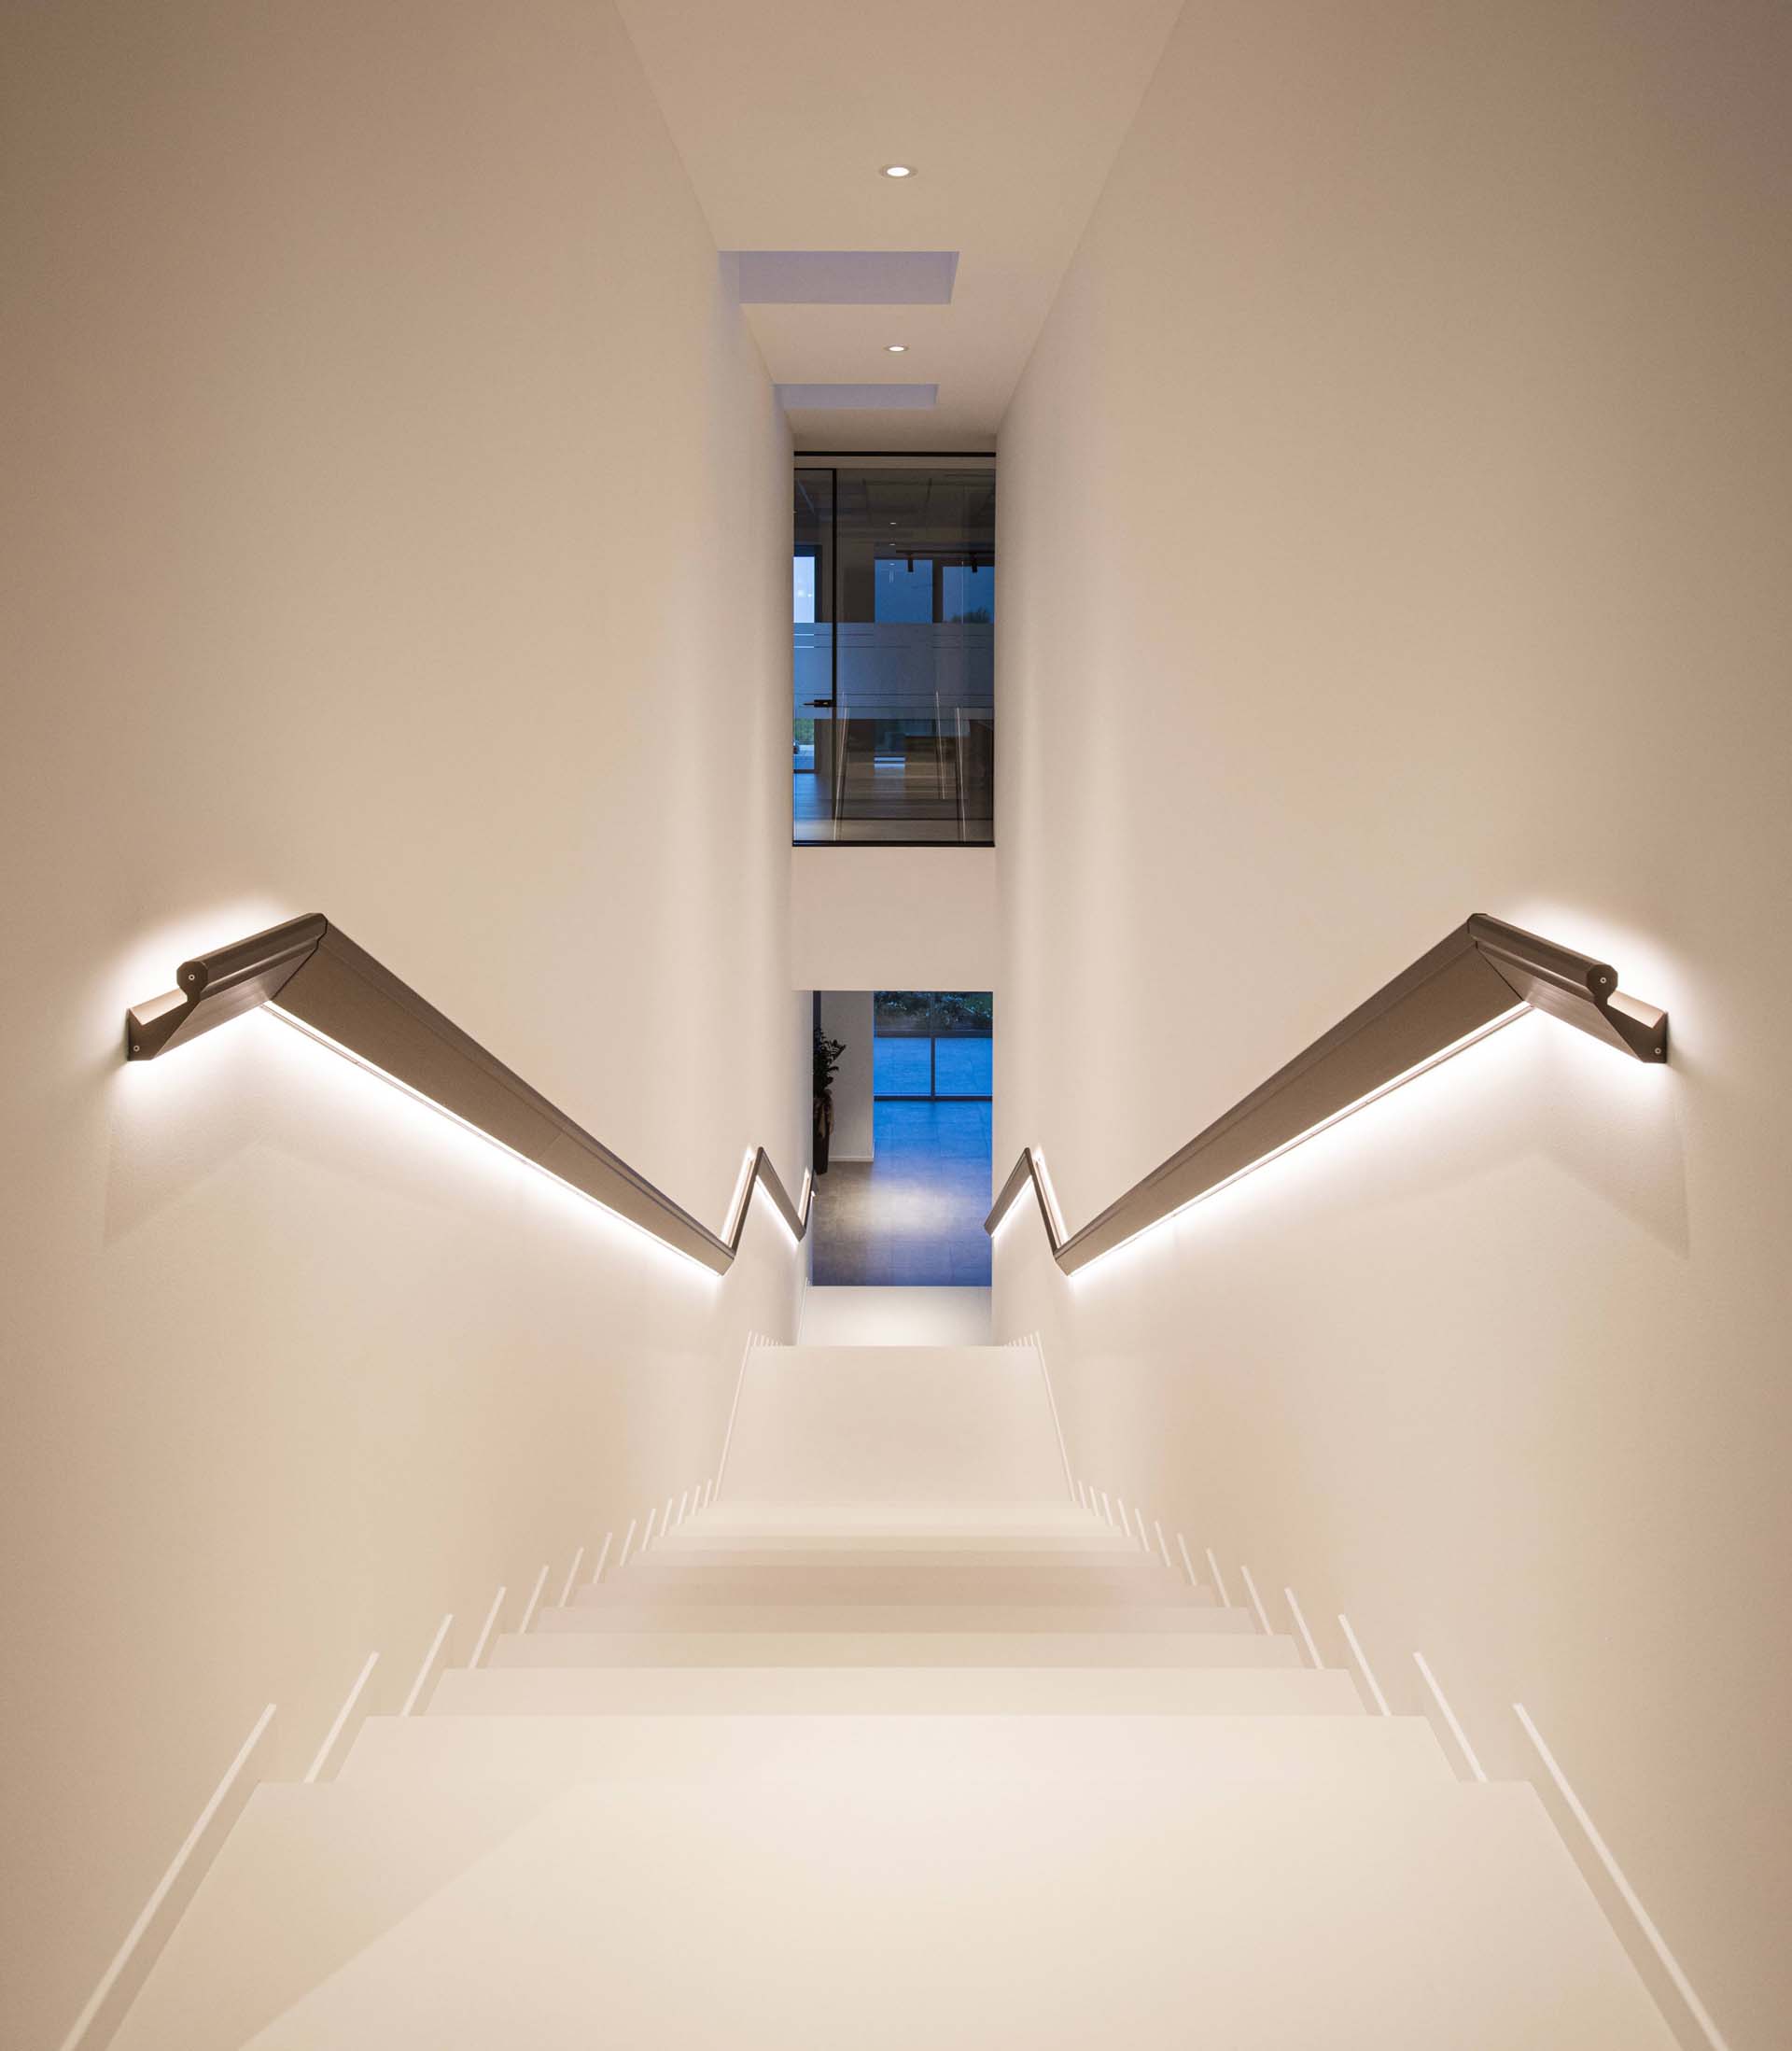 A modern stair handrail with hidden lighting.